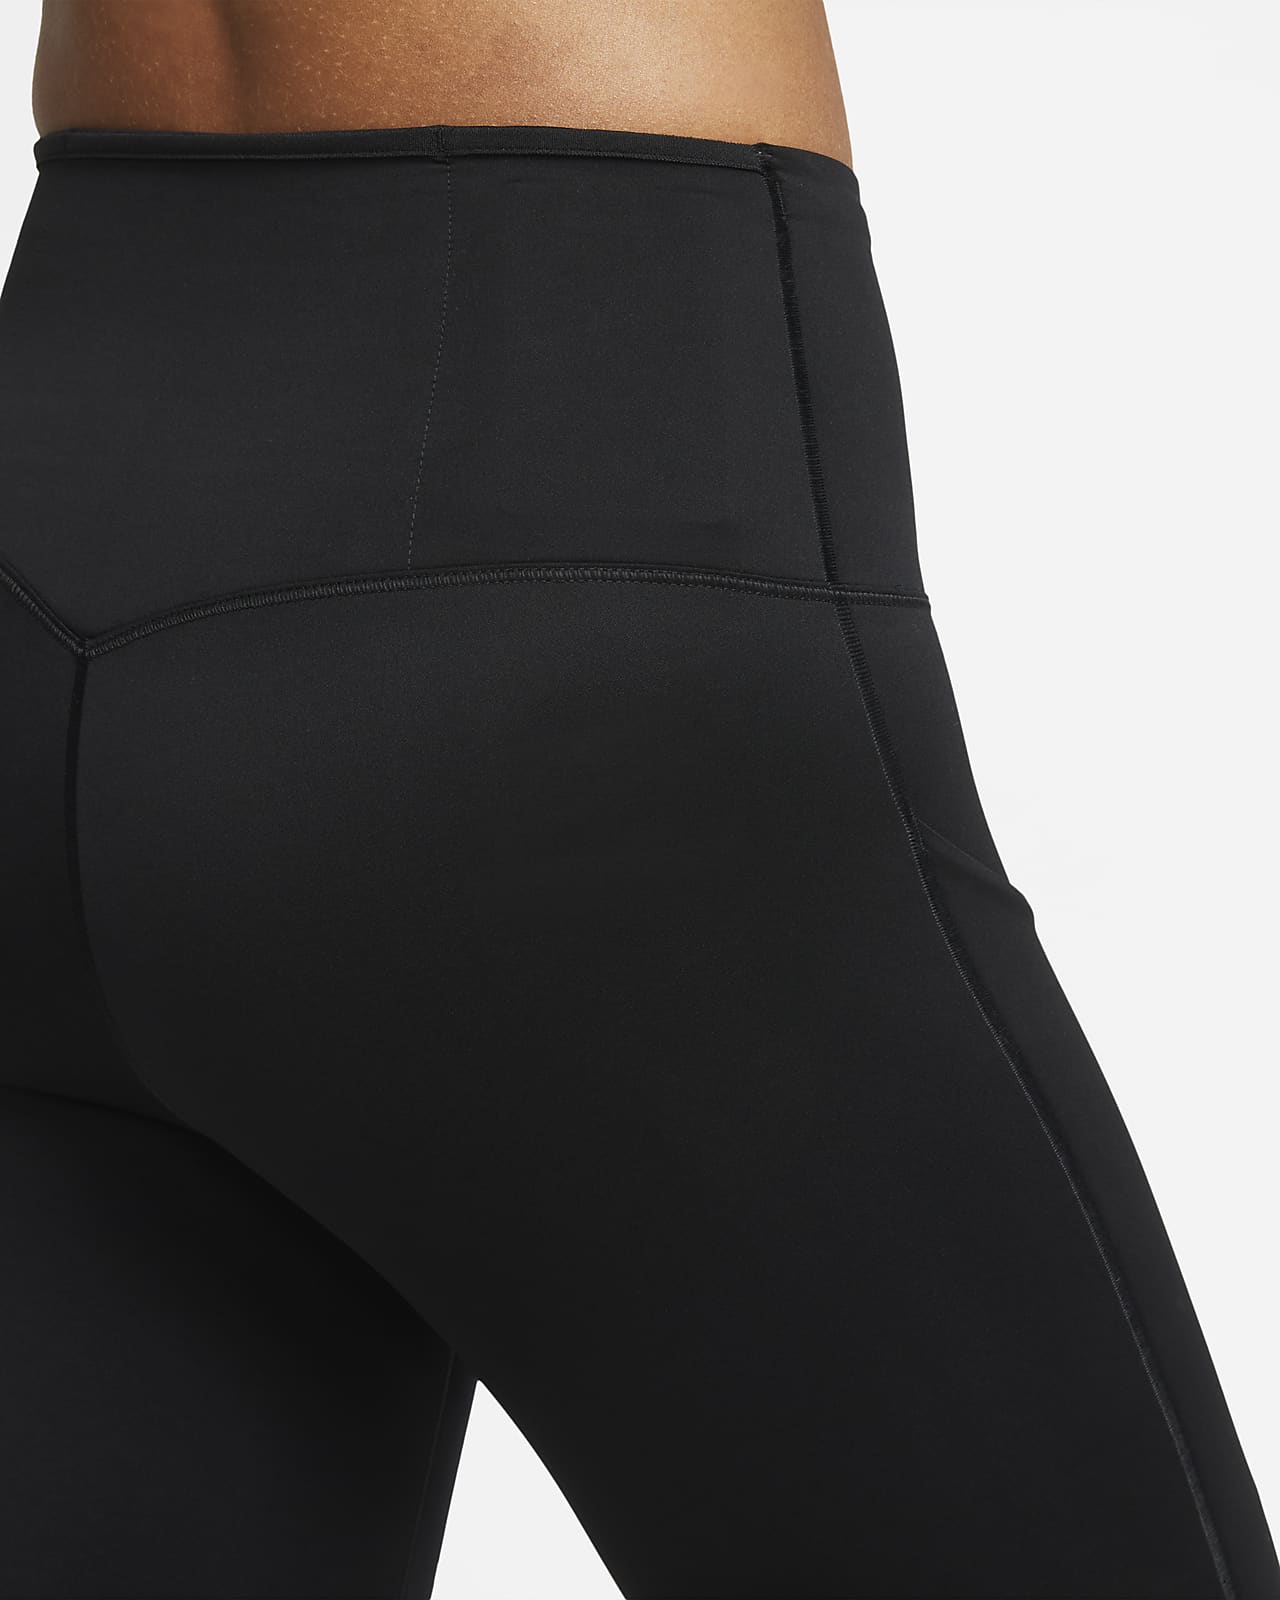 vingerafdruk verraden Baan Nike Go Women's Firm-Support High-Waisted Full-Length Leggings with  Pockets. Nike.com